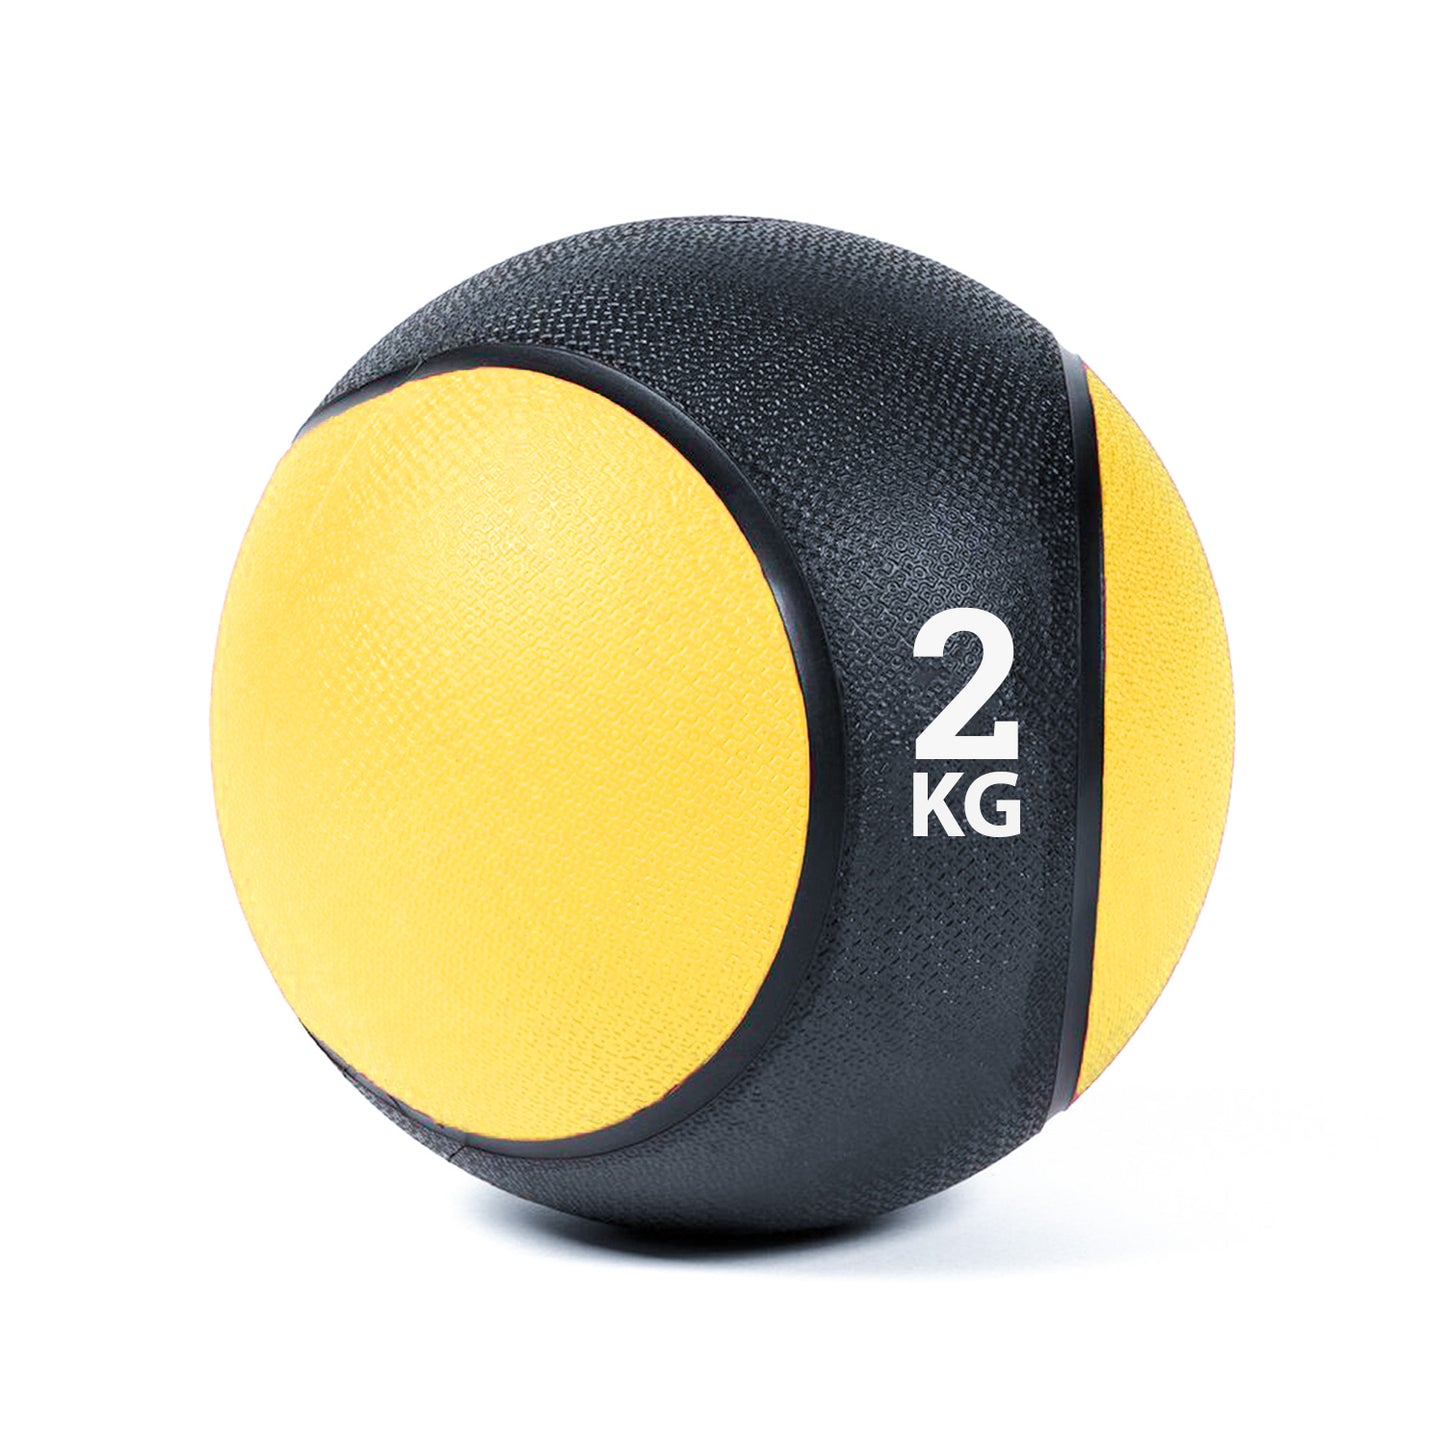 كرة طبية من المطاط لاعادة التأهيل و اللياقة البدنية - لون اسود و اصفر - وزن 2 كيلو جرام